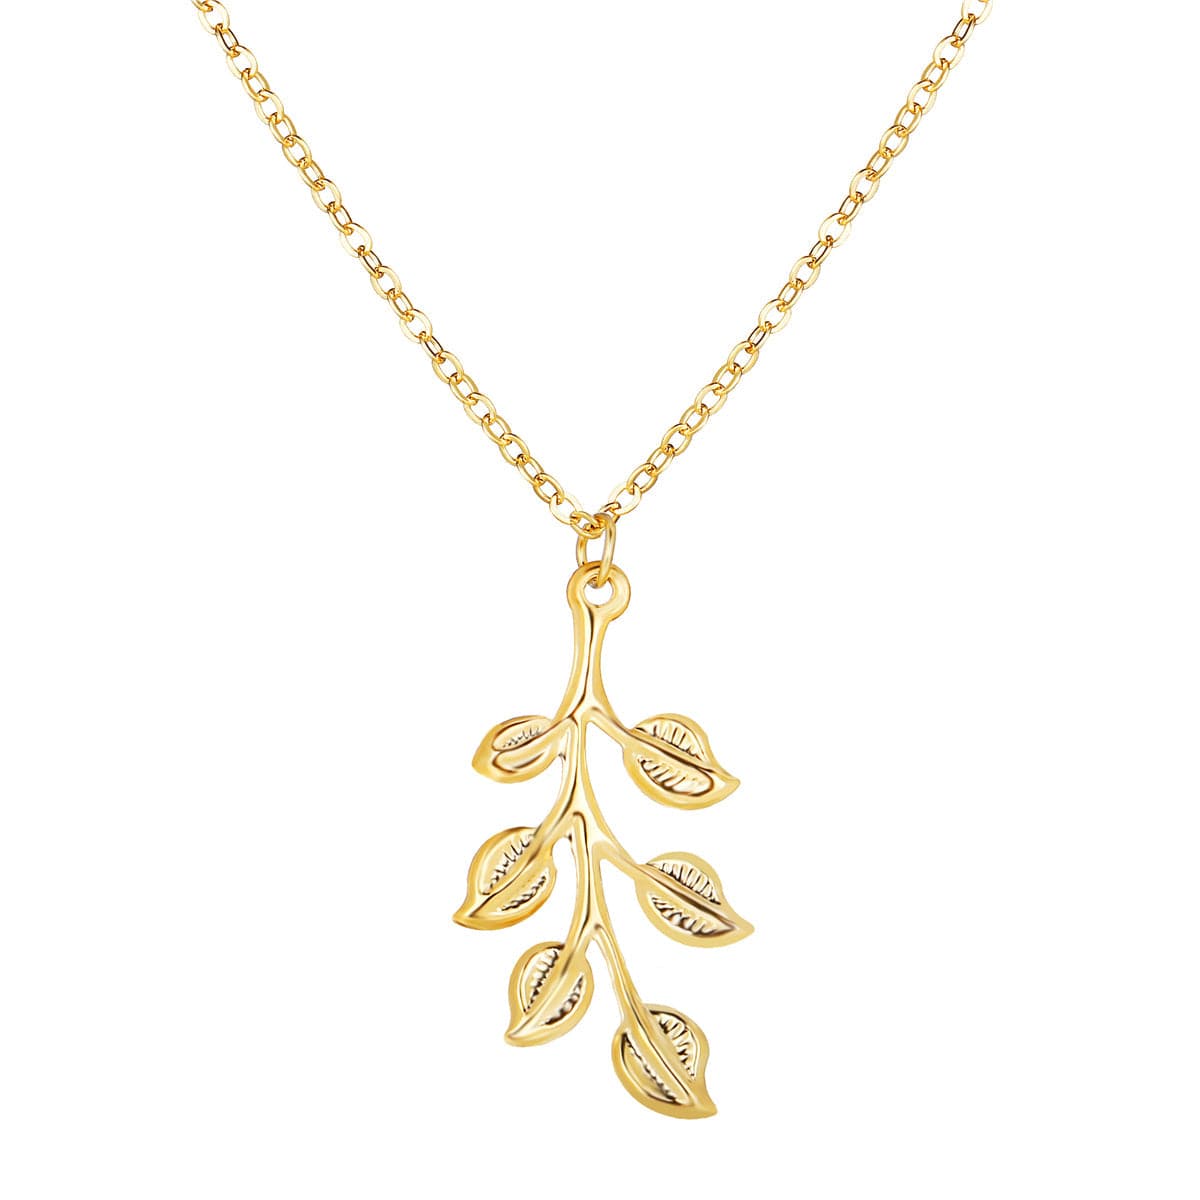 18K Gold-Plated Leaf Pendant Necklace